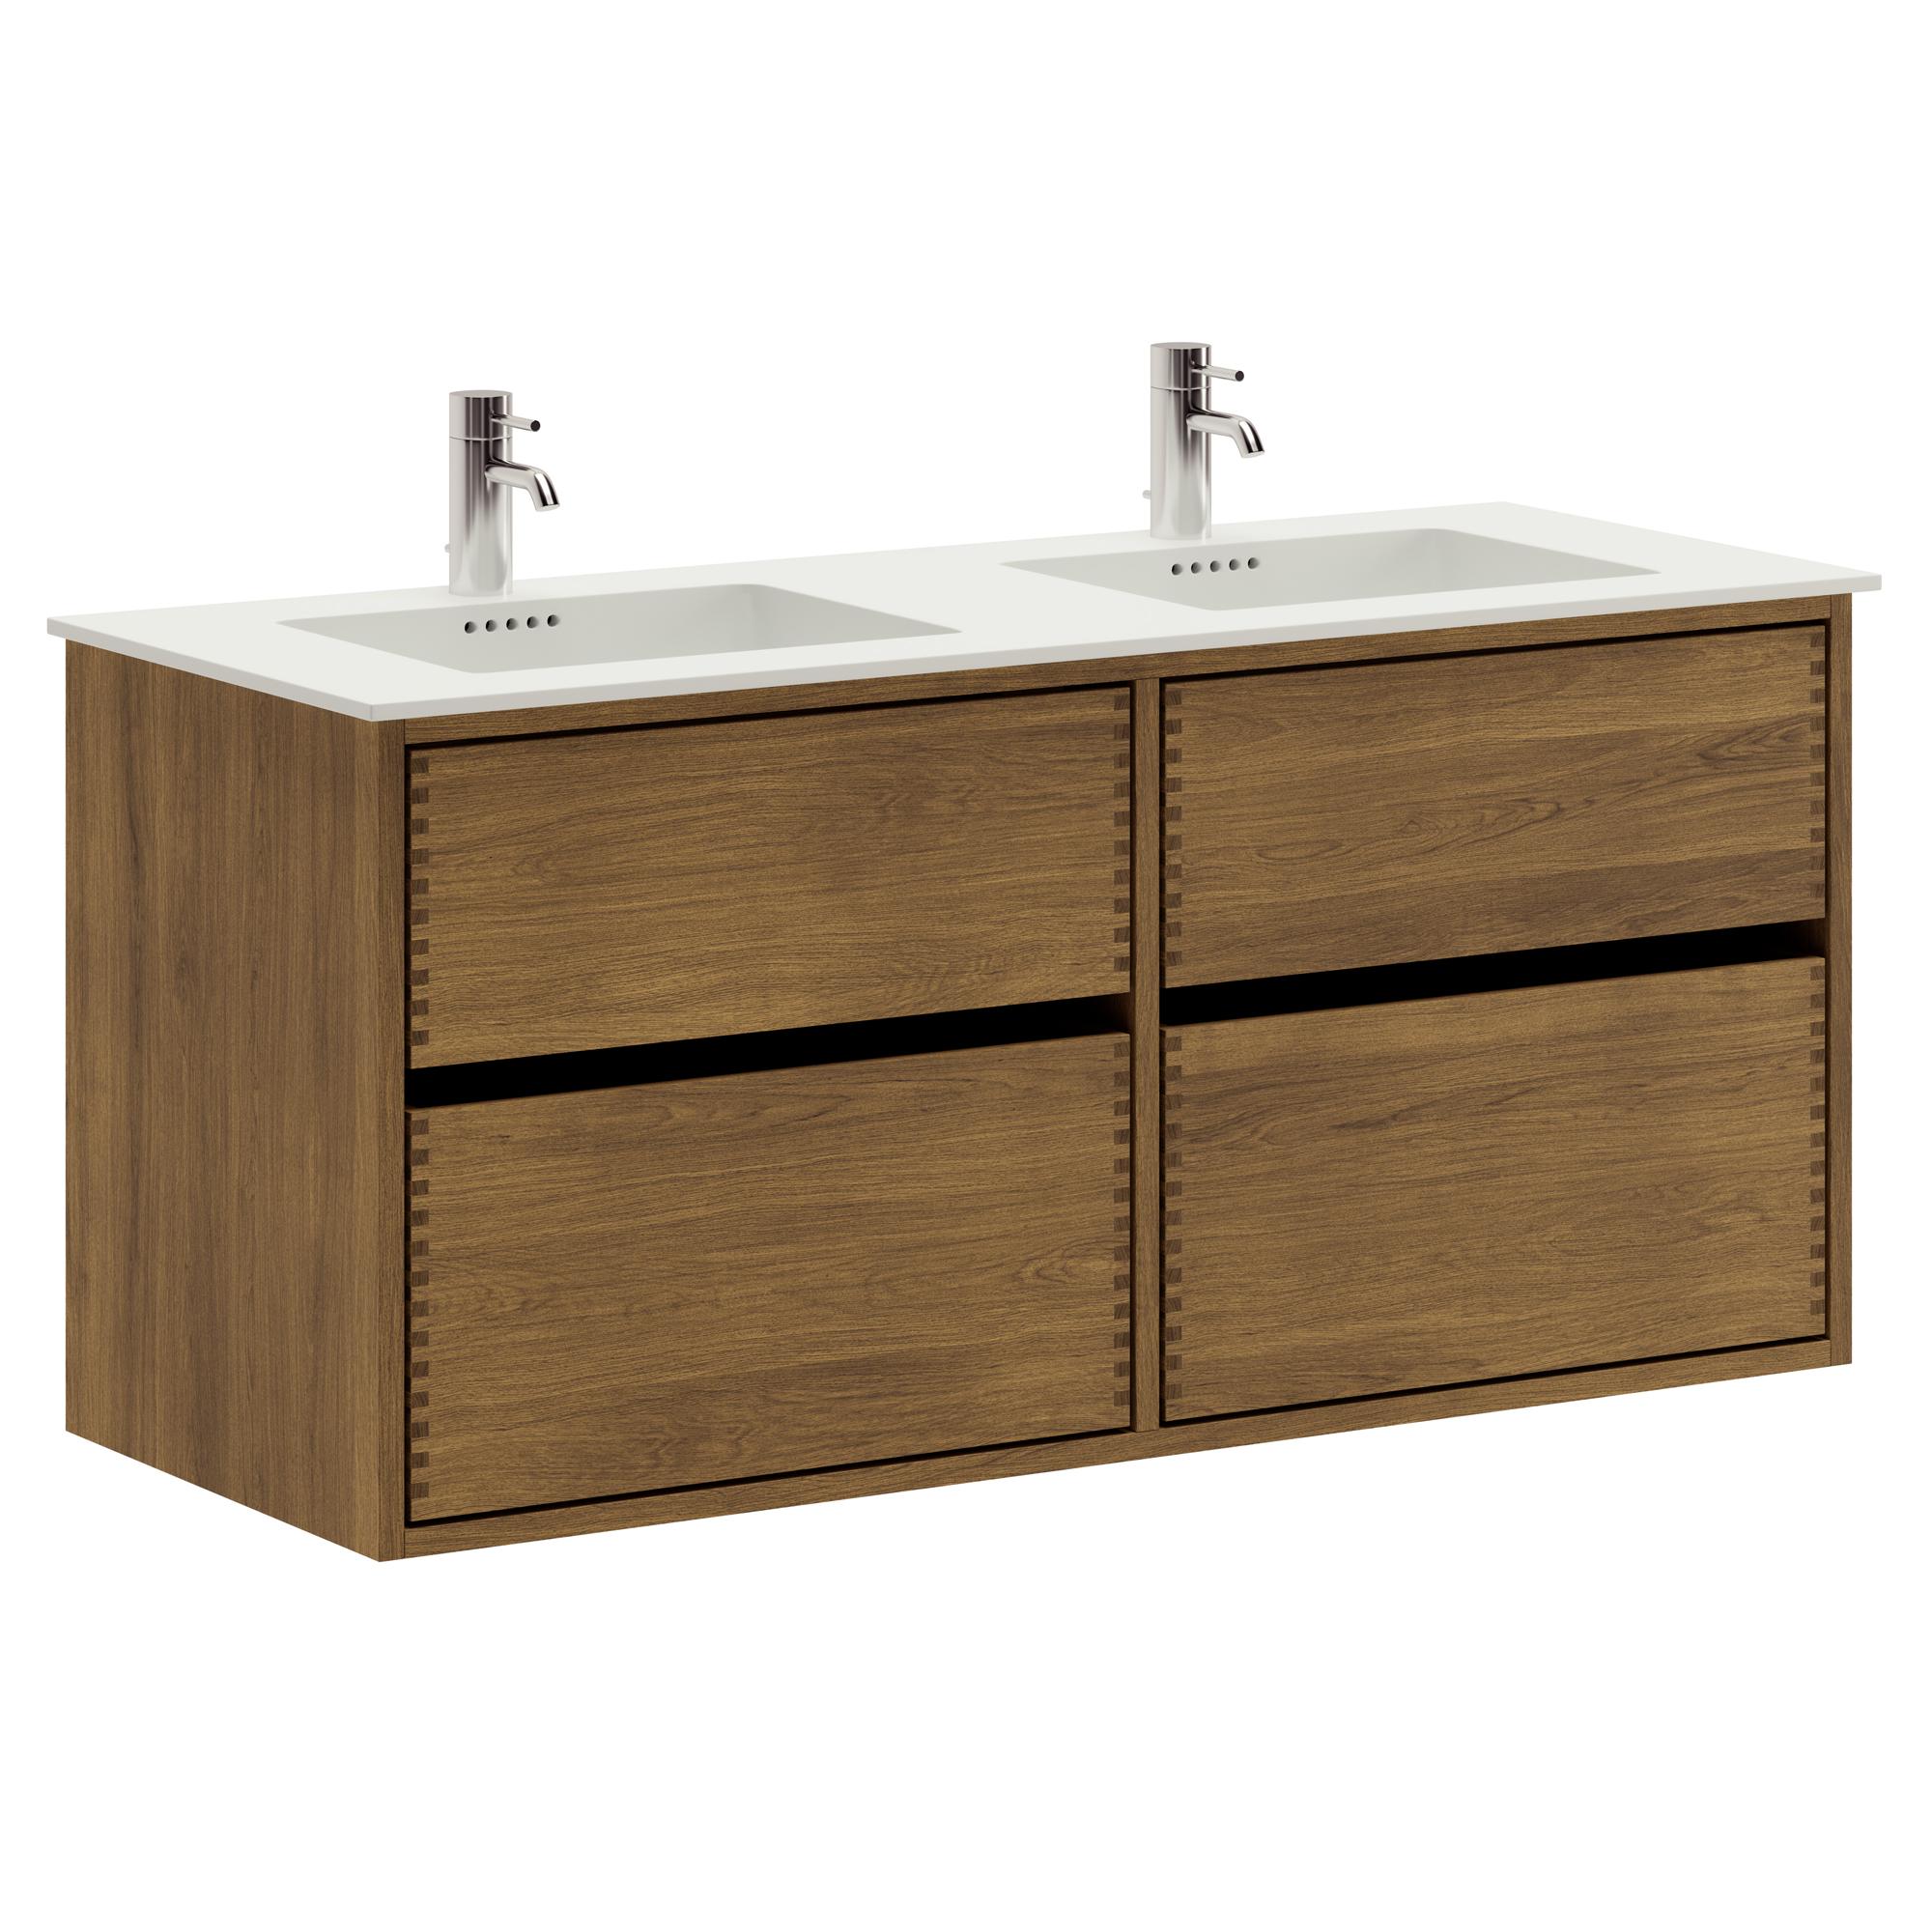 120 cm dunkel-geölter Just Wood Original-Badezimmermöbel mit 4 Schubladen und Solid Surface-Waschbecken - Doppelwaschbecken